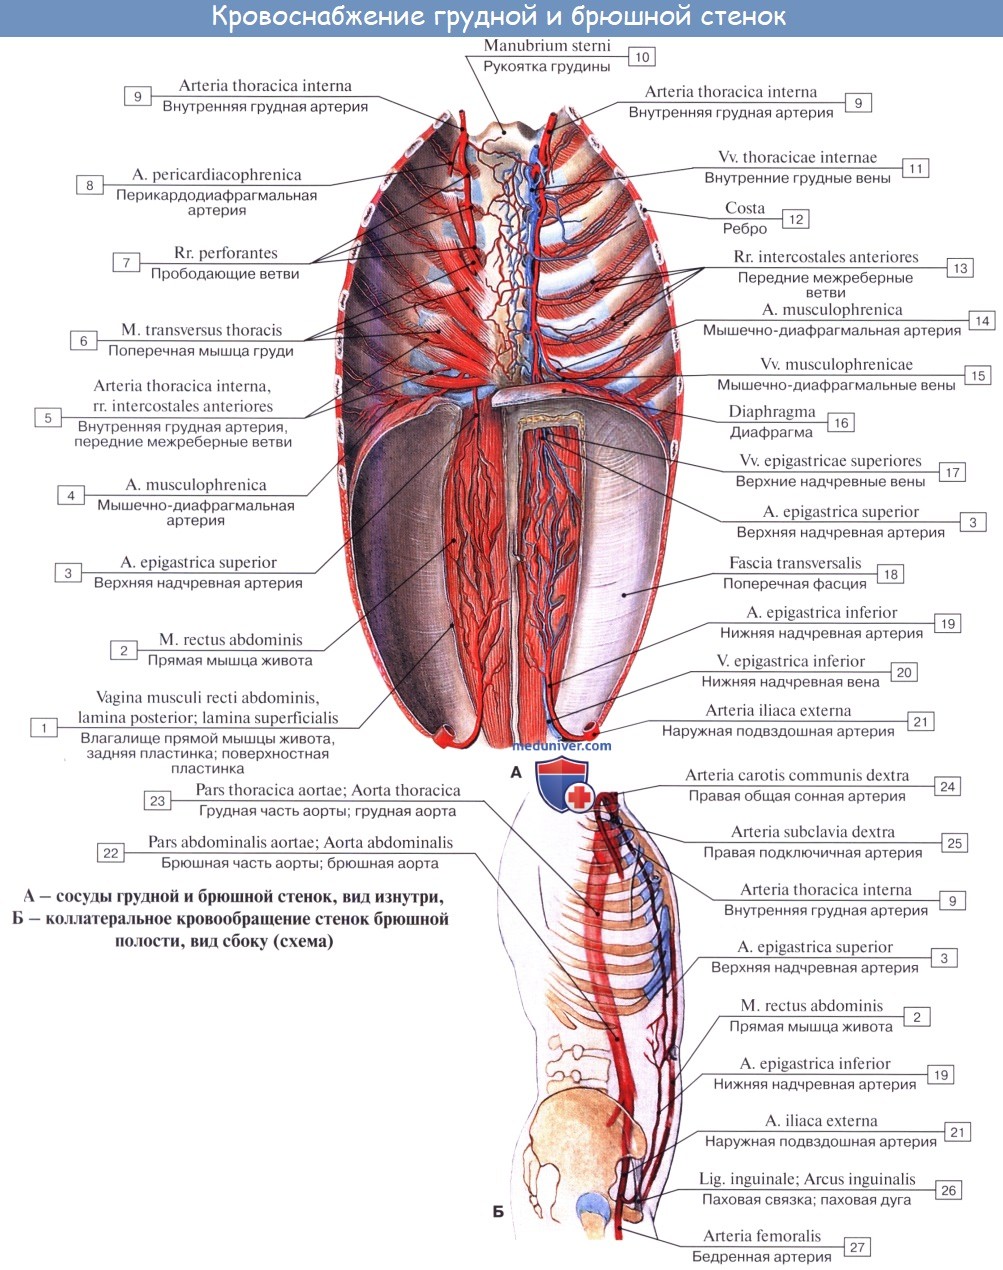 Анатомия: Наружная подвздошная артерия, a. iliaca externa. Ветви наружной подвздошной артерии